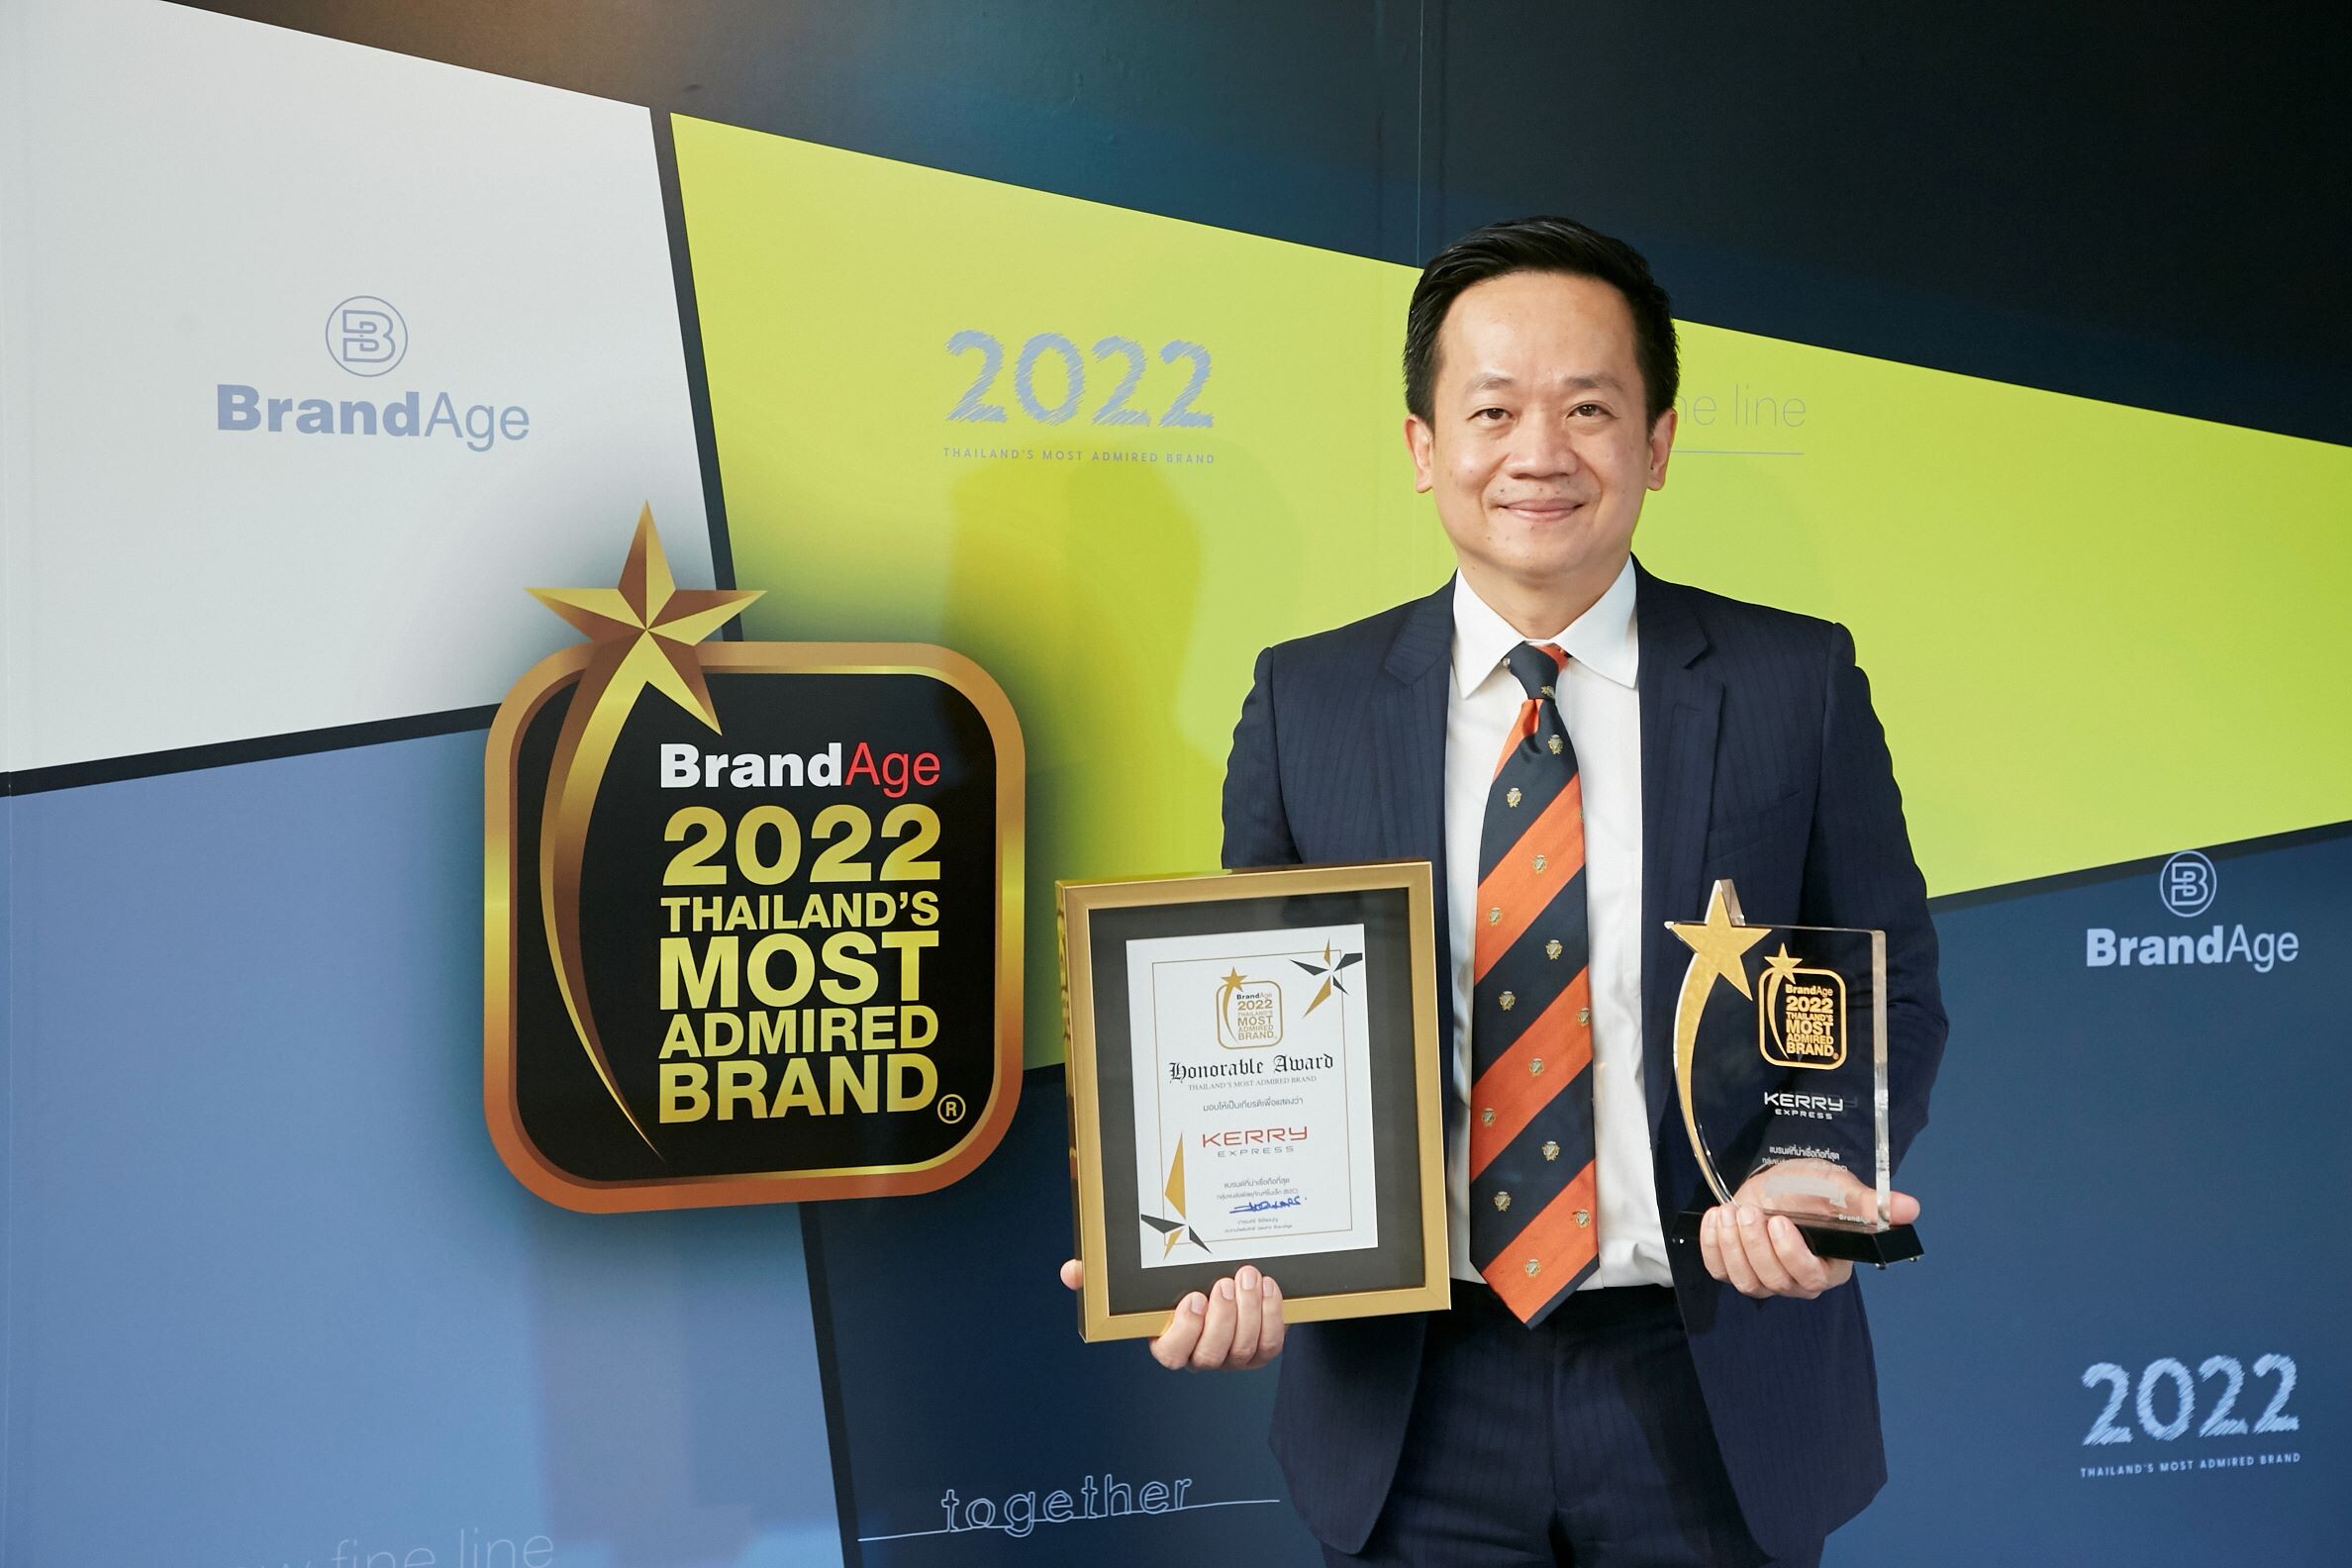 Kerry Express ครองตำแหน่งอันดับ 1 ด้านบริการจัดส่งพัสดุด่วนในประเทศไทย การันตีด้วยรางวัล สุดยอดแบรนด์ครองใจผู้บริโภค ประจำปี 2022 ติดต่อกัน 3 ปีซ้อน พ่วงรางวัลพิเศษ Brand Impact Award